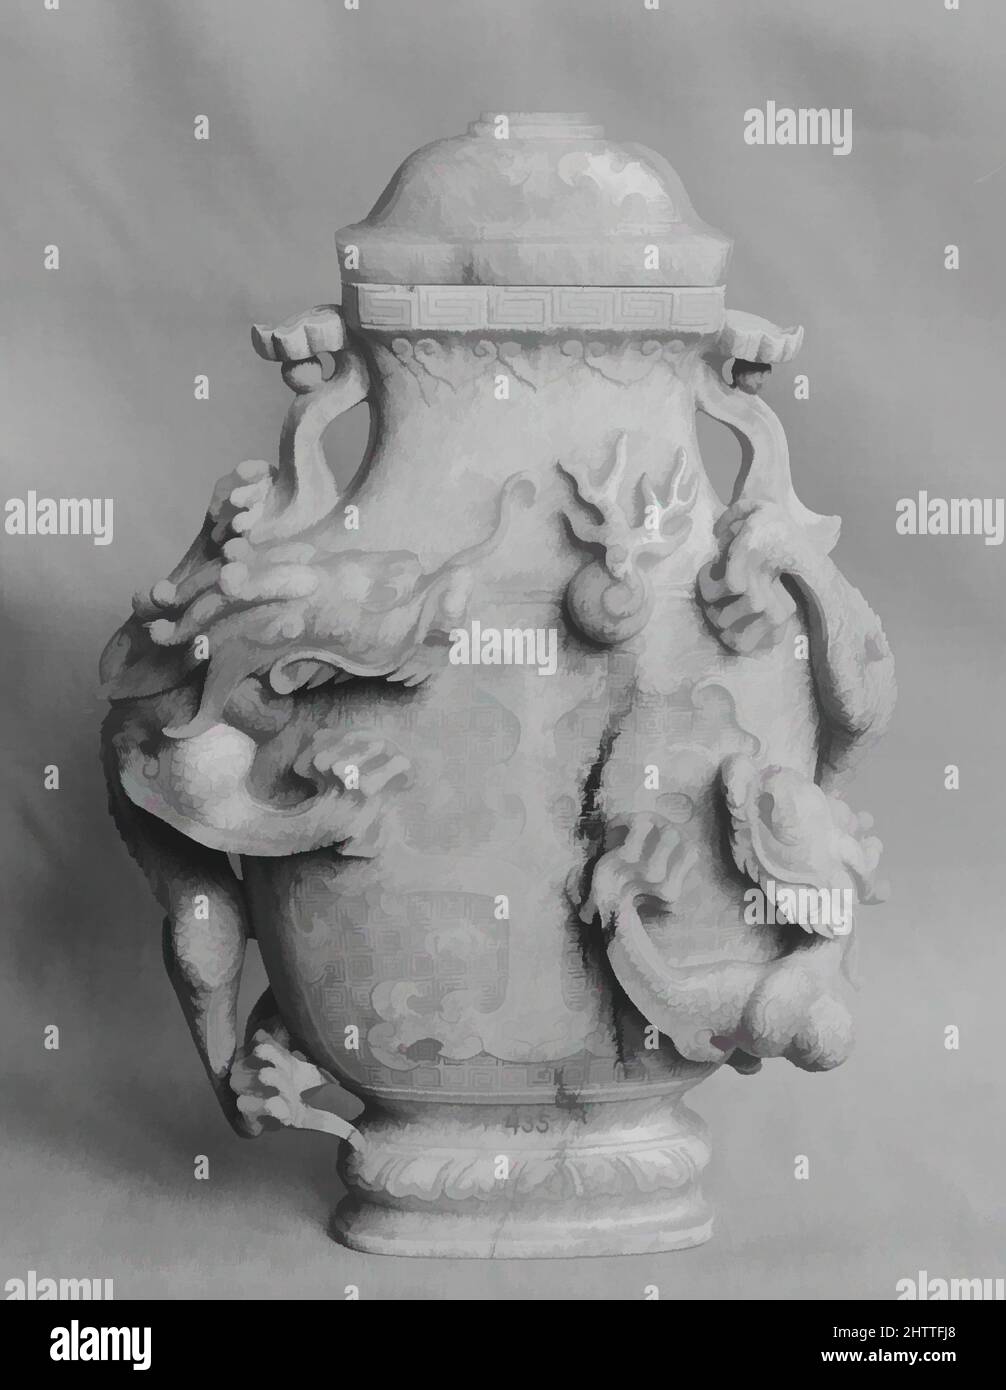 Kunst inspiriert von Vase mit Deckel, Qing-Dynastie (1644–1911), Kangxi-Periode (1662–1722), China, Nephrit, Weiß wurde durch Kalzinierung in einen opaken Aschenton geändert, H. 7 1/8 Zoll (18,1 cm); B: 5 7/8 Zoll (14,9 cm); L. 1 7/8 Zoll (4,8 cm), Jade, Classic Works modernisiert von Artotop mit einem Schuss Modernität. Formen, Farbe und Wert, auffällige visuelle Wirkung auf Kunst. Emotionen durch Freiheit von Kunstwerken auf zeitgemäße Weise. Eine zeitlose Botschaft, die eine wild kreative neue Richtung verfolgt. Künstler, die sich dem digitalen Medium zuwenden und die Artotop NFT erschaffen Stockfoto